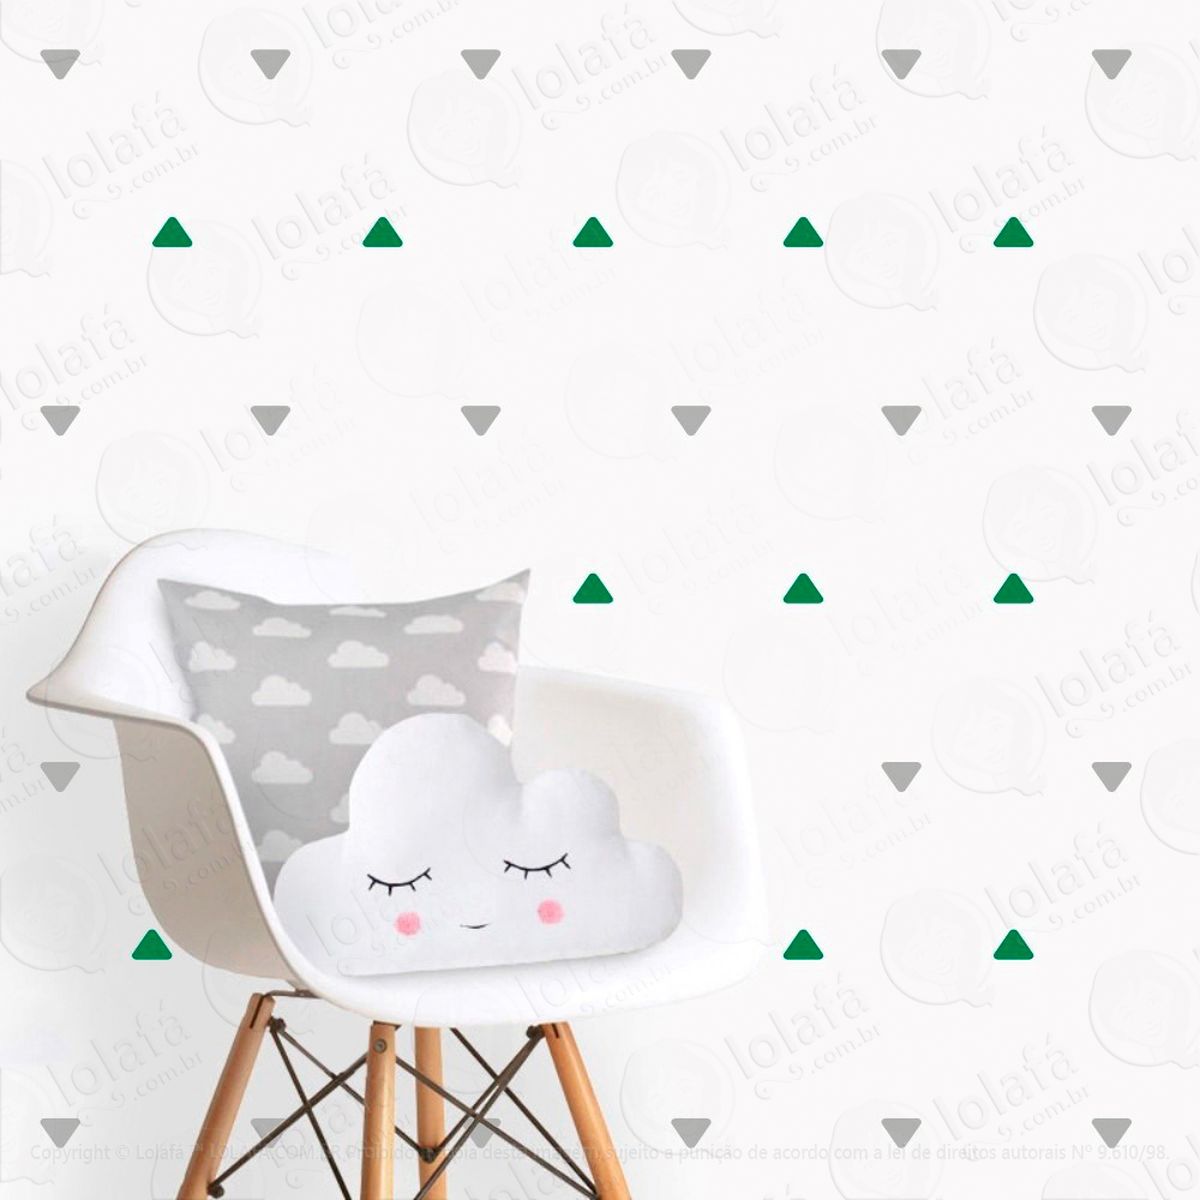 adesivos triângulos 216 peças adesivos para quarto de bebê infantil - mod:216